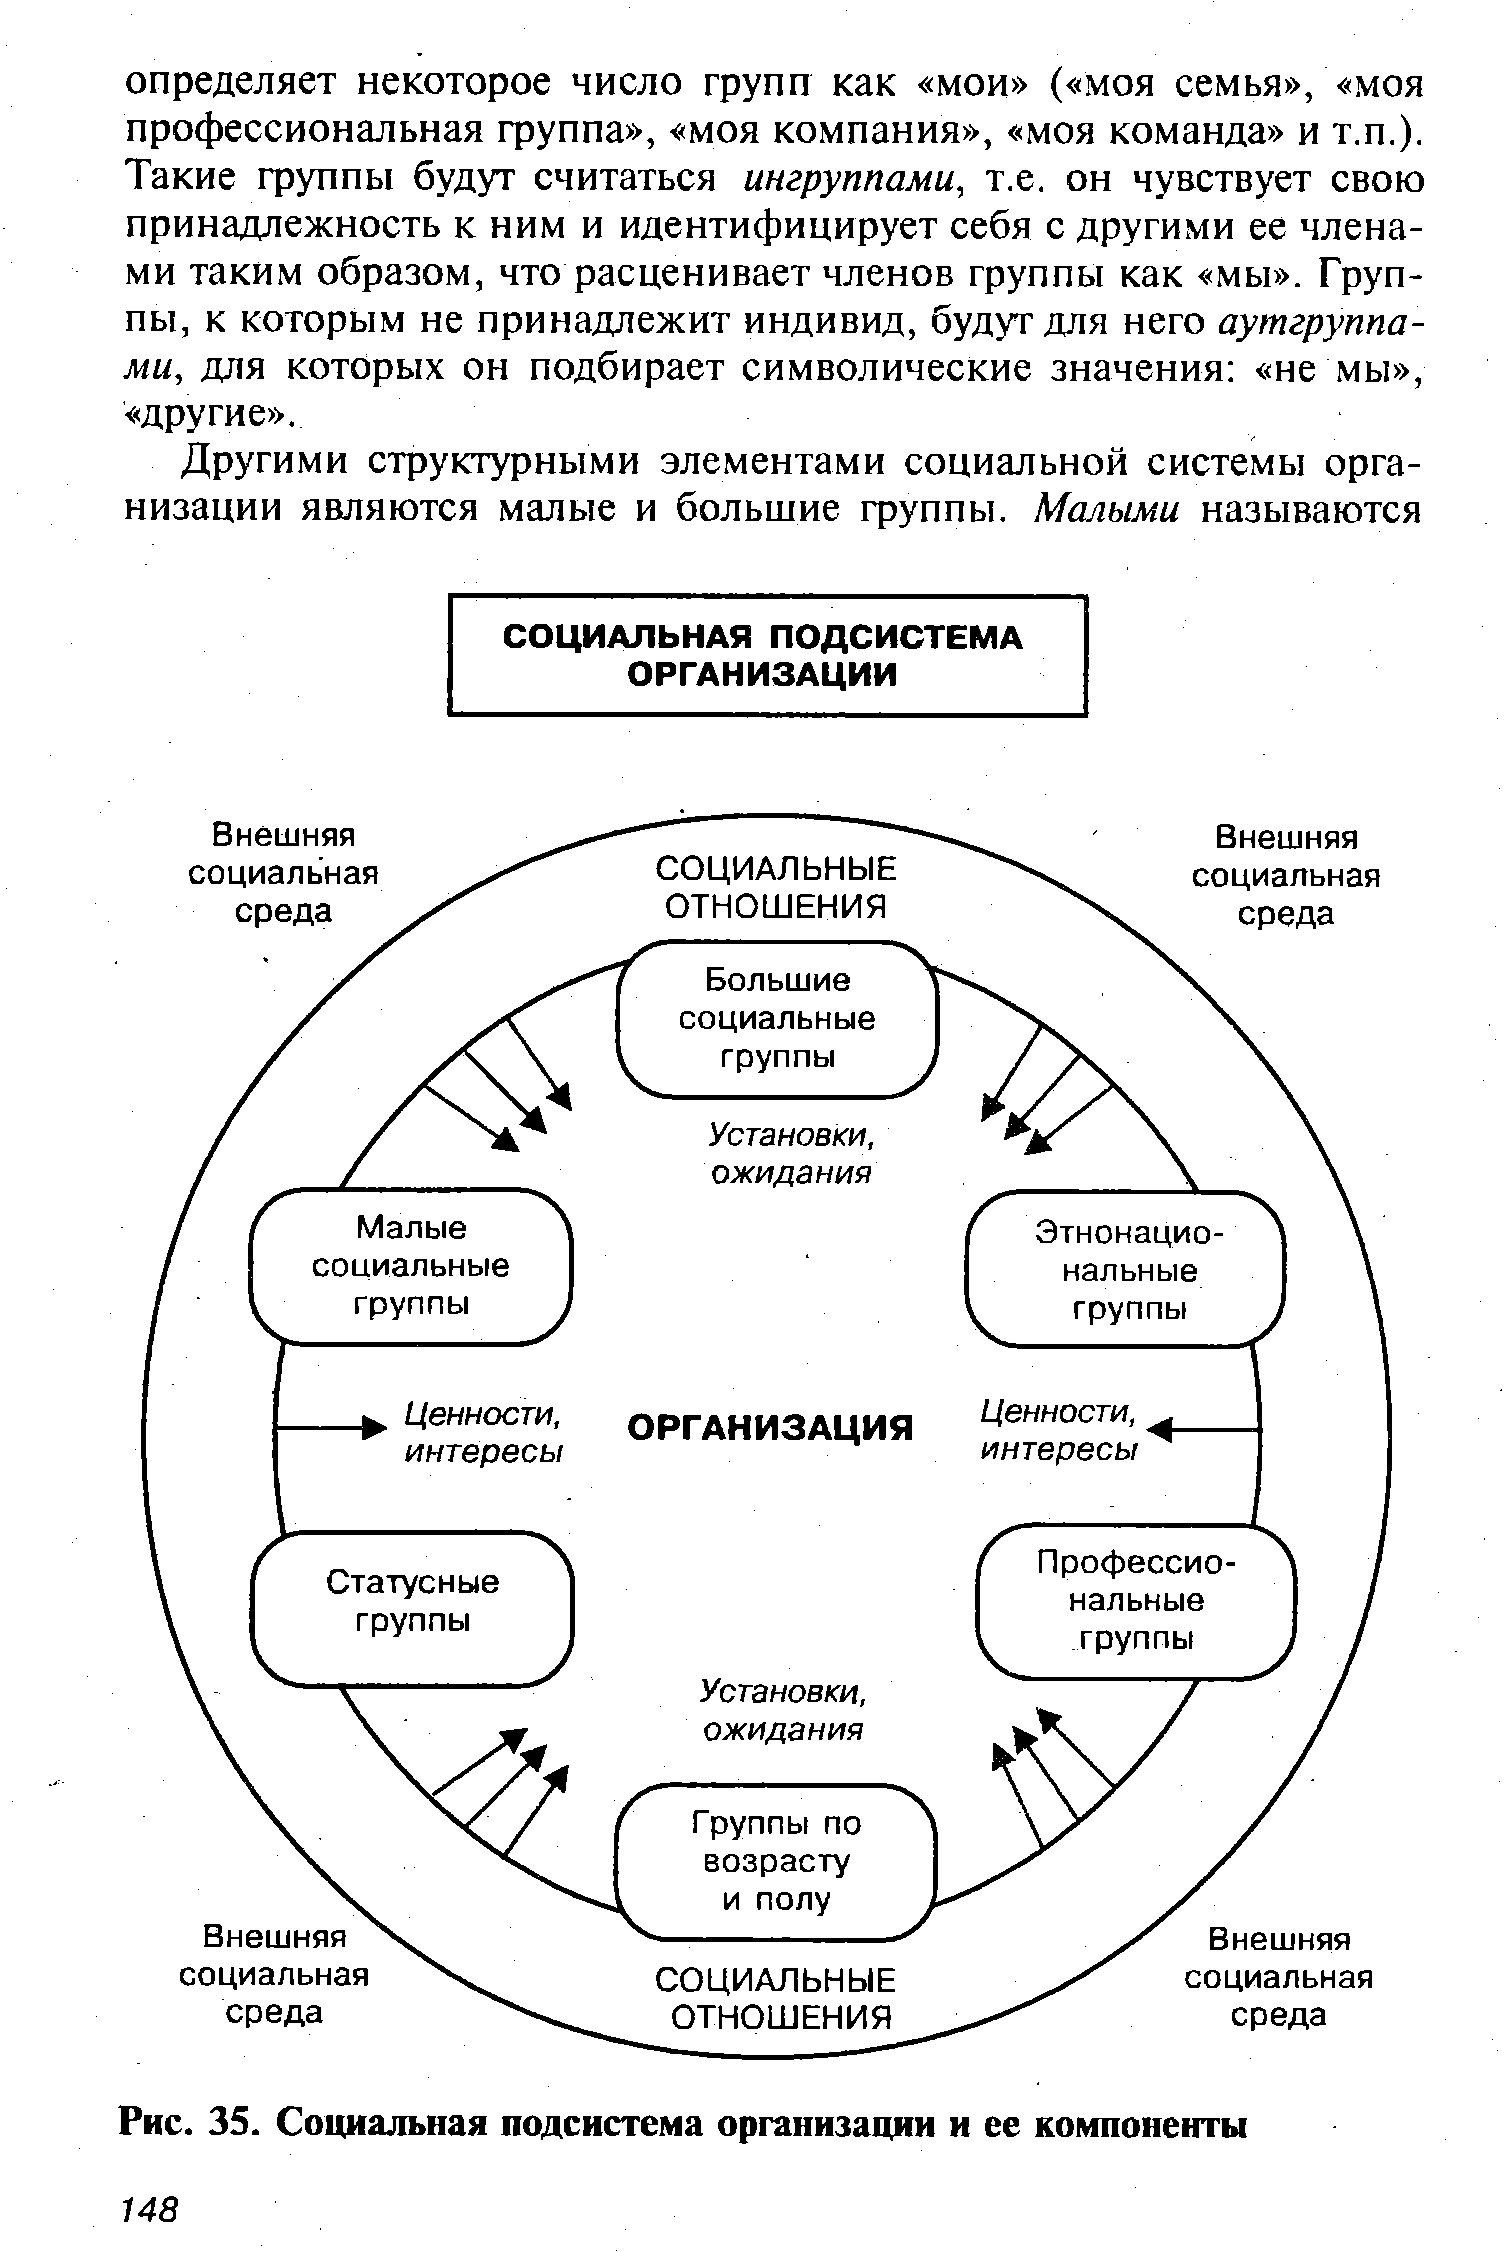 Рис. 35. Социальная подсистема организации и ее компоненты
